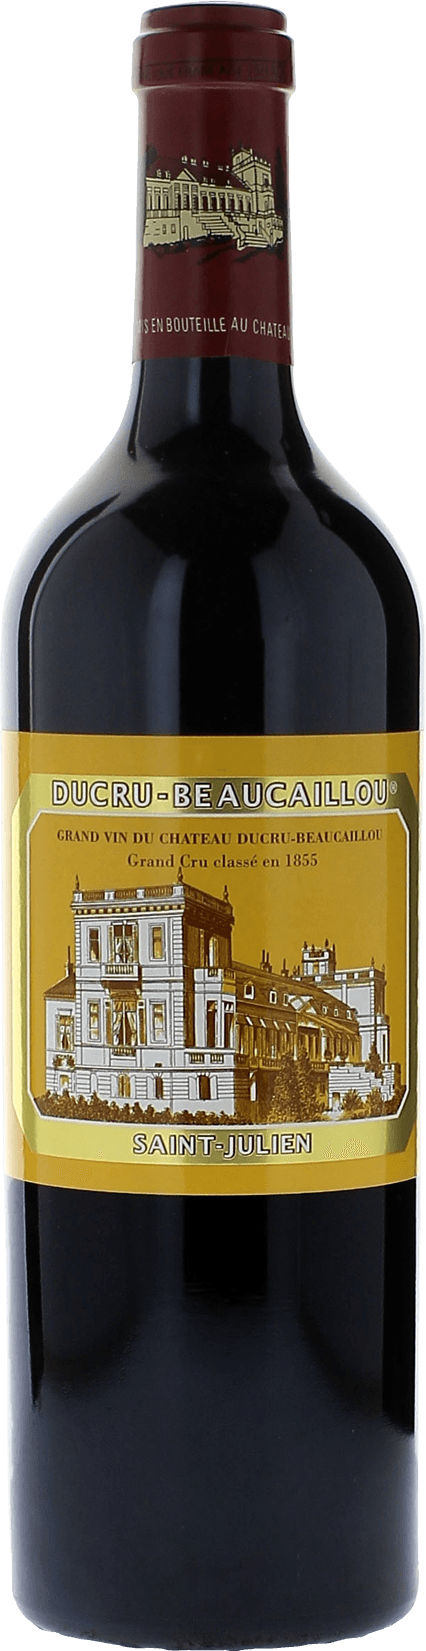 Ducru beaucaillou 1991 2me Grand cru class Saint-Julien, Bordeaux rouge